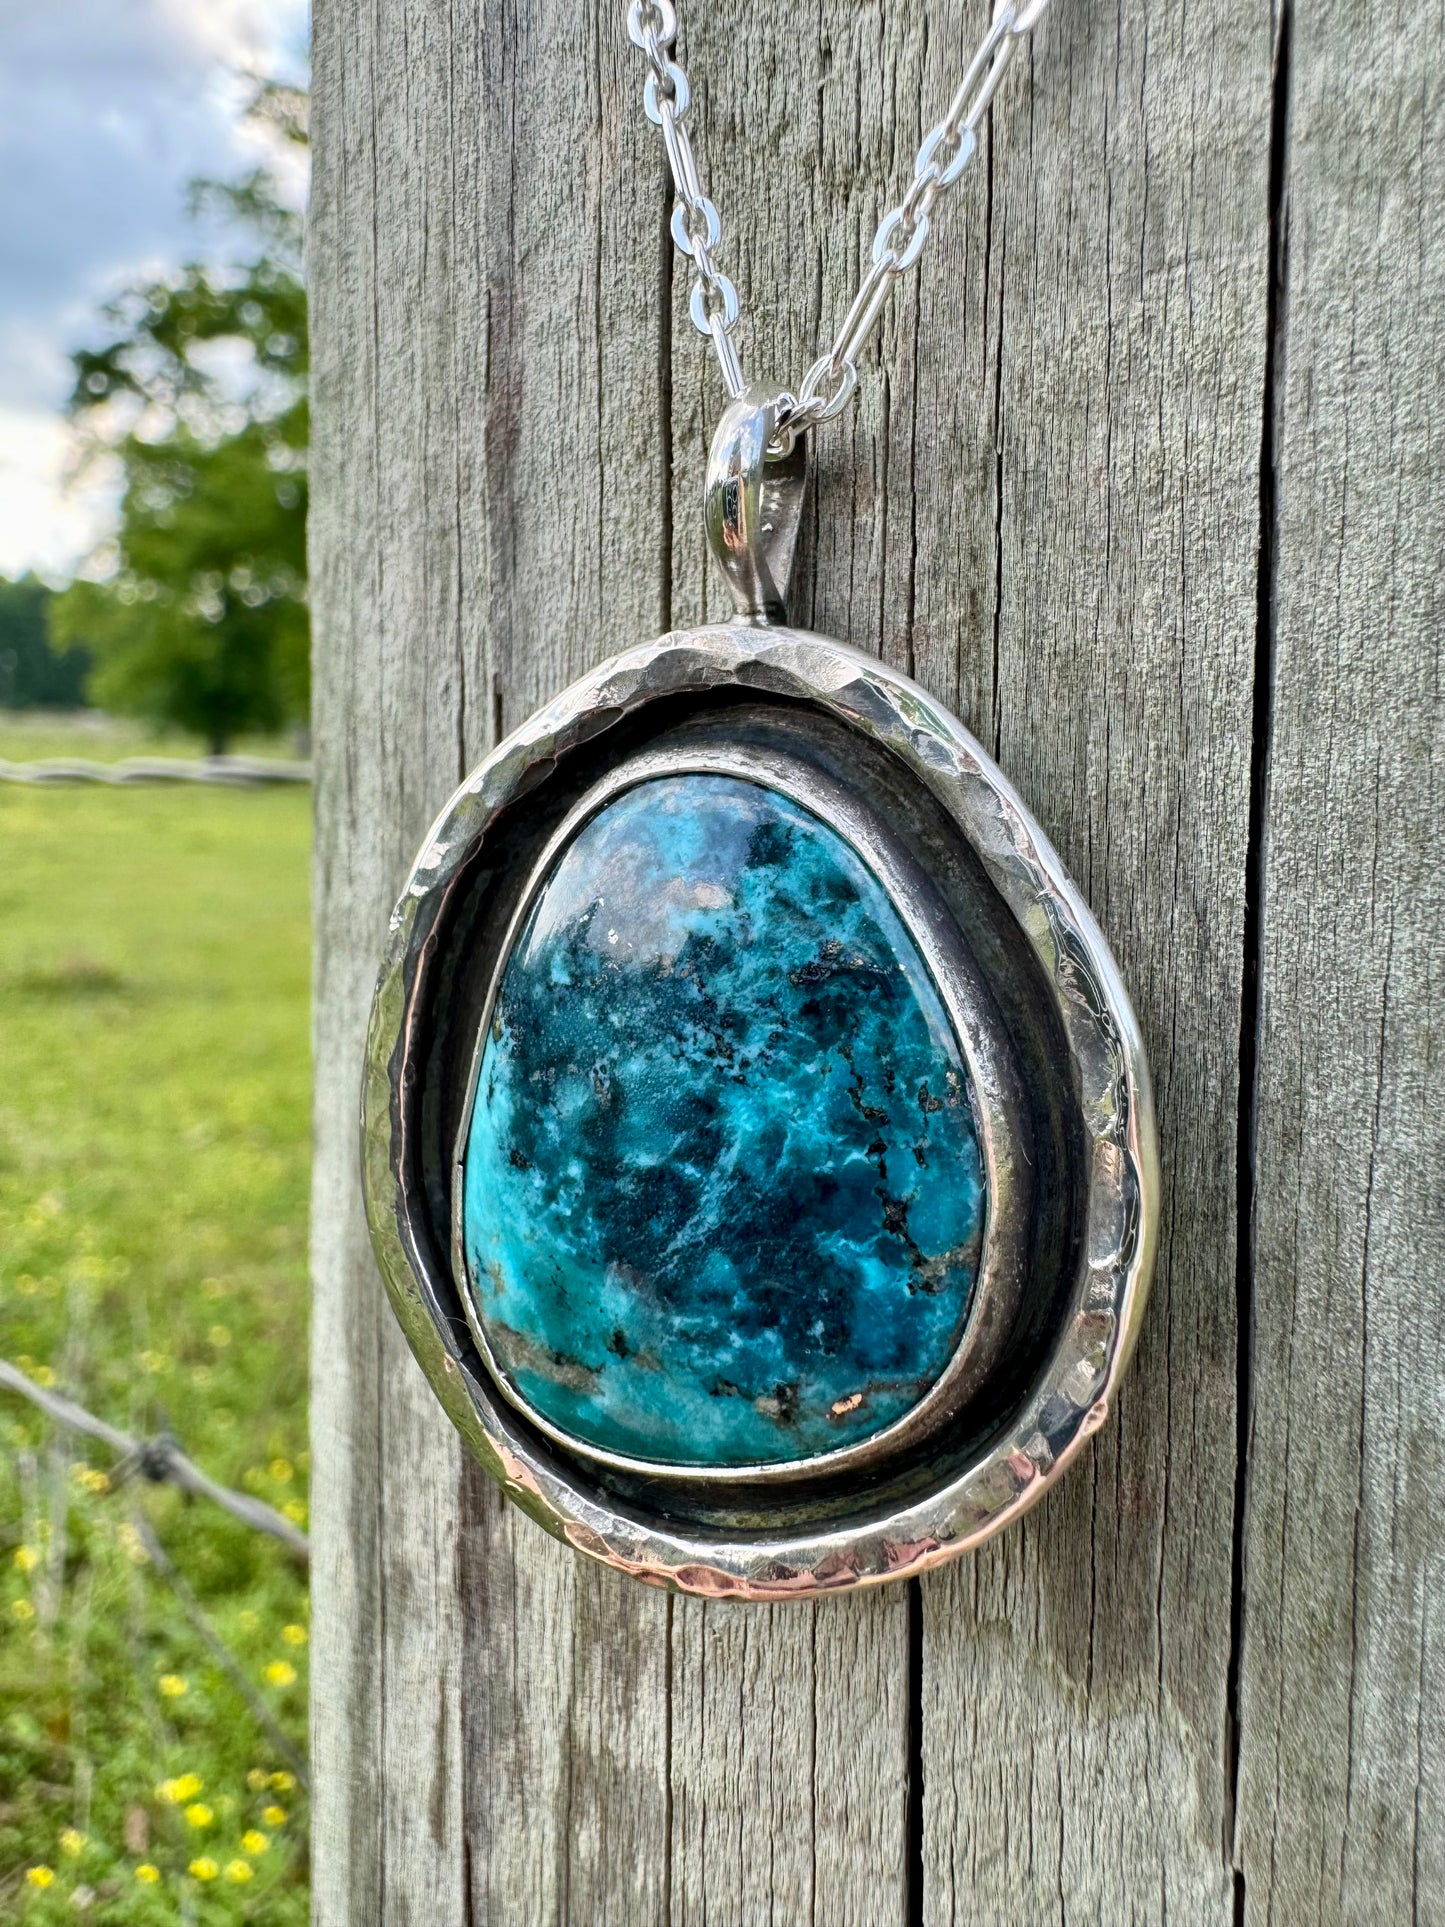 Oversized Morenci turquoise pendant